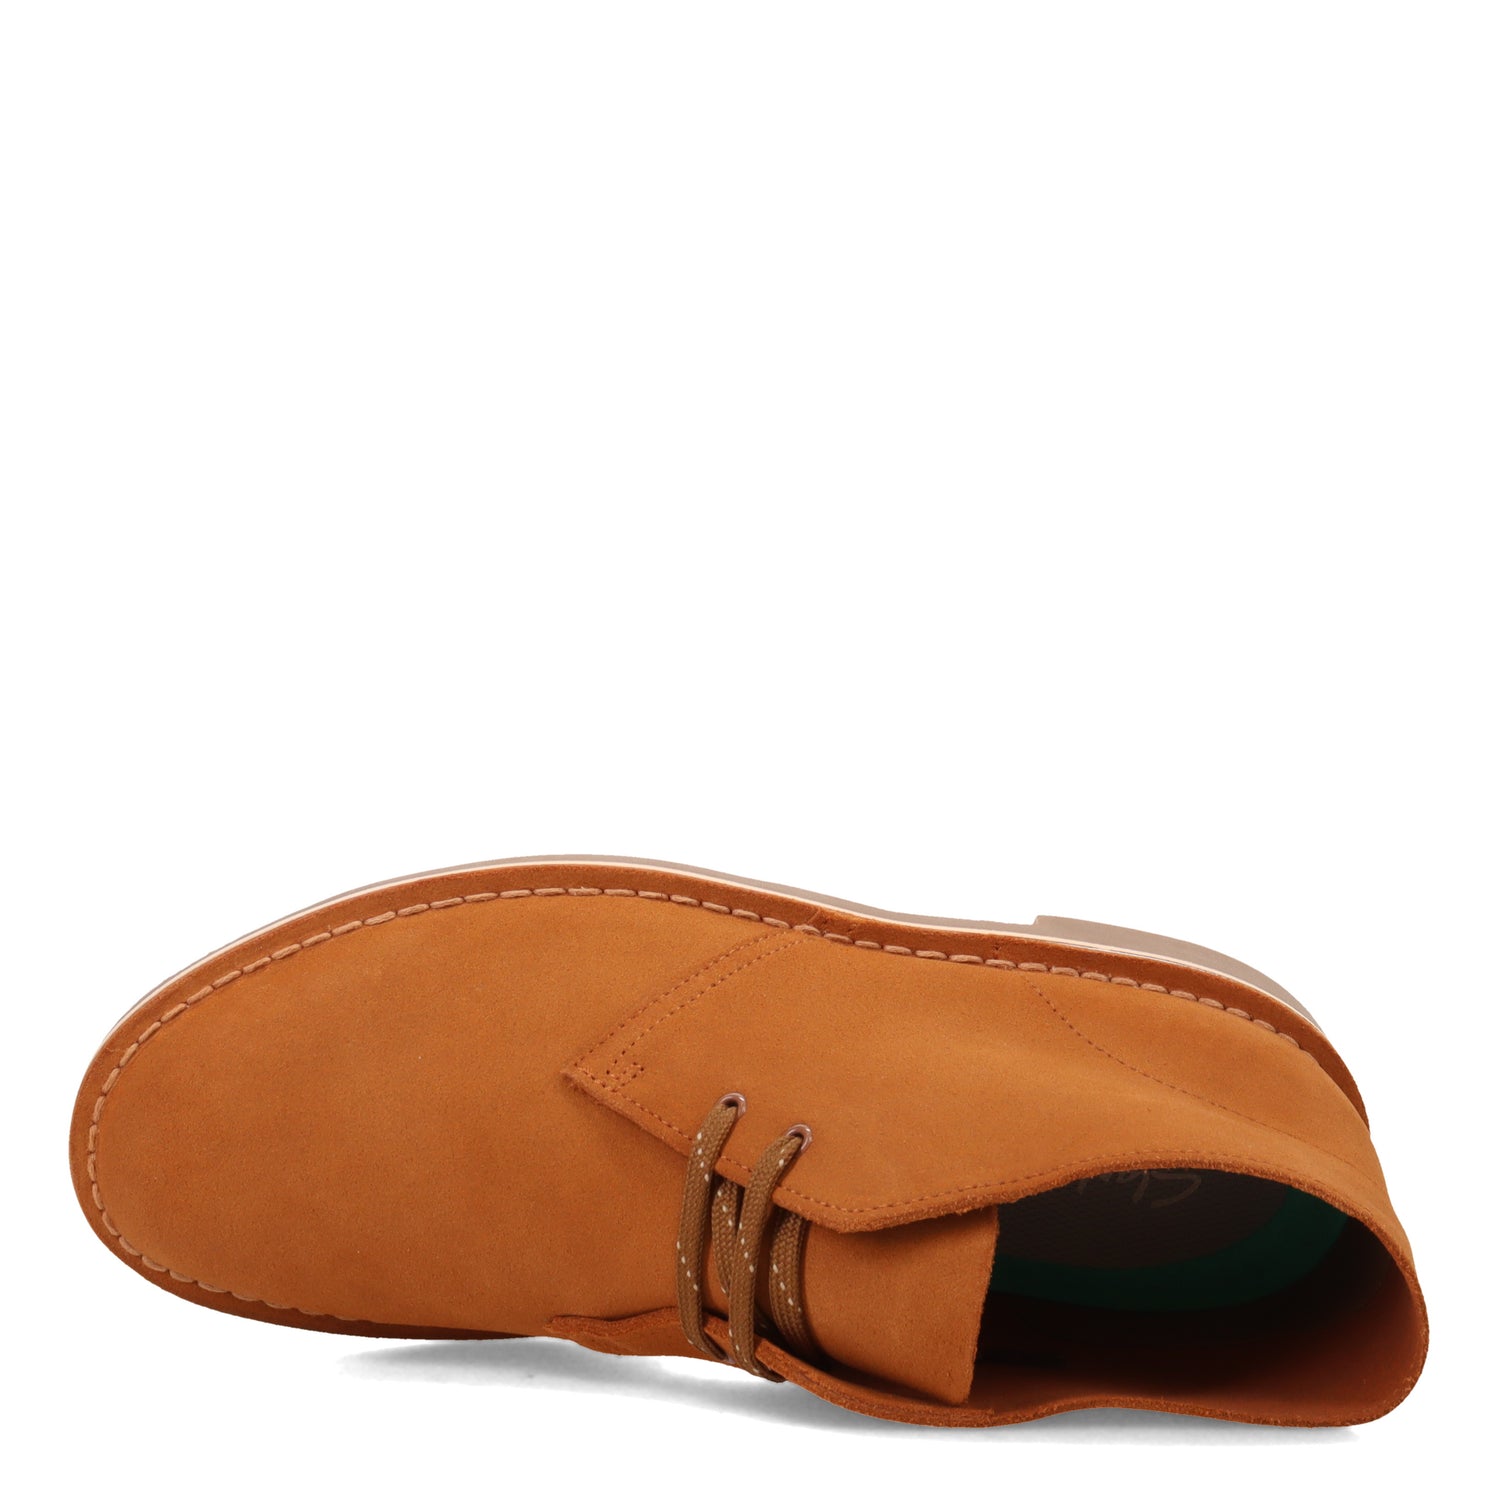 Peltz Shoes  Men's Clarks Bushacre 3 Chukka Boot TAN SUEDE 26168651